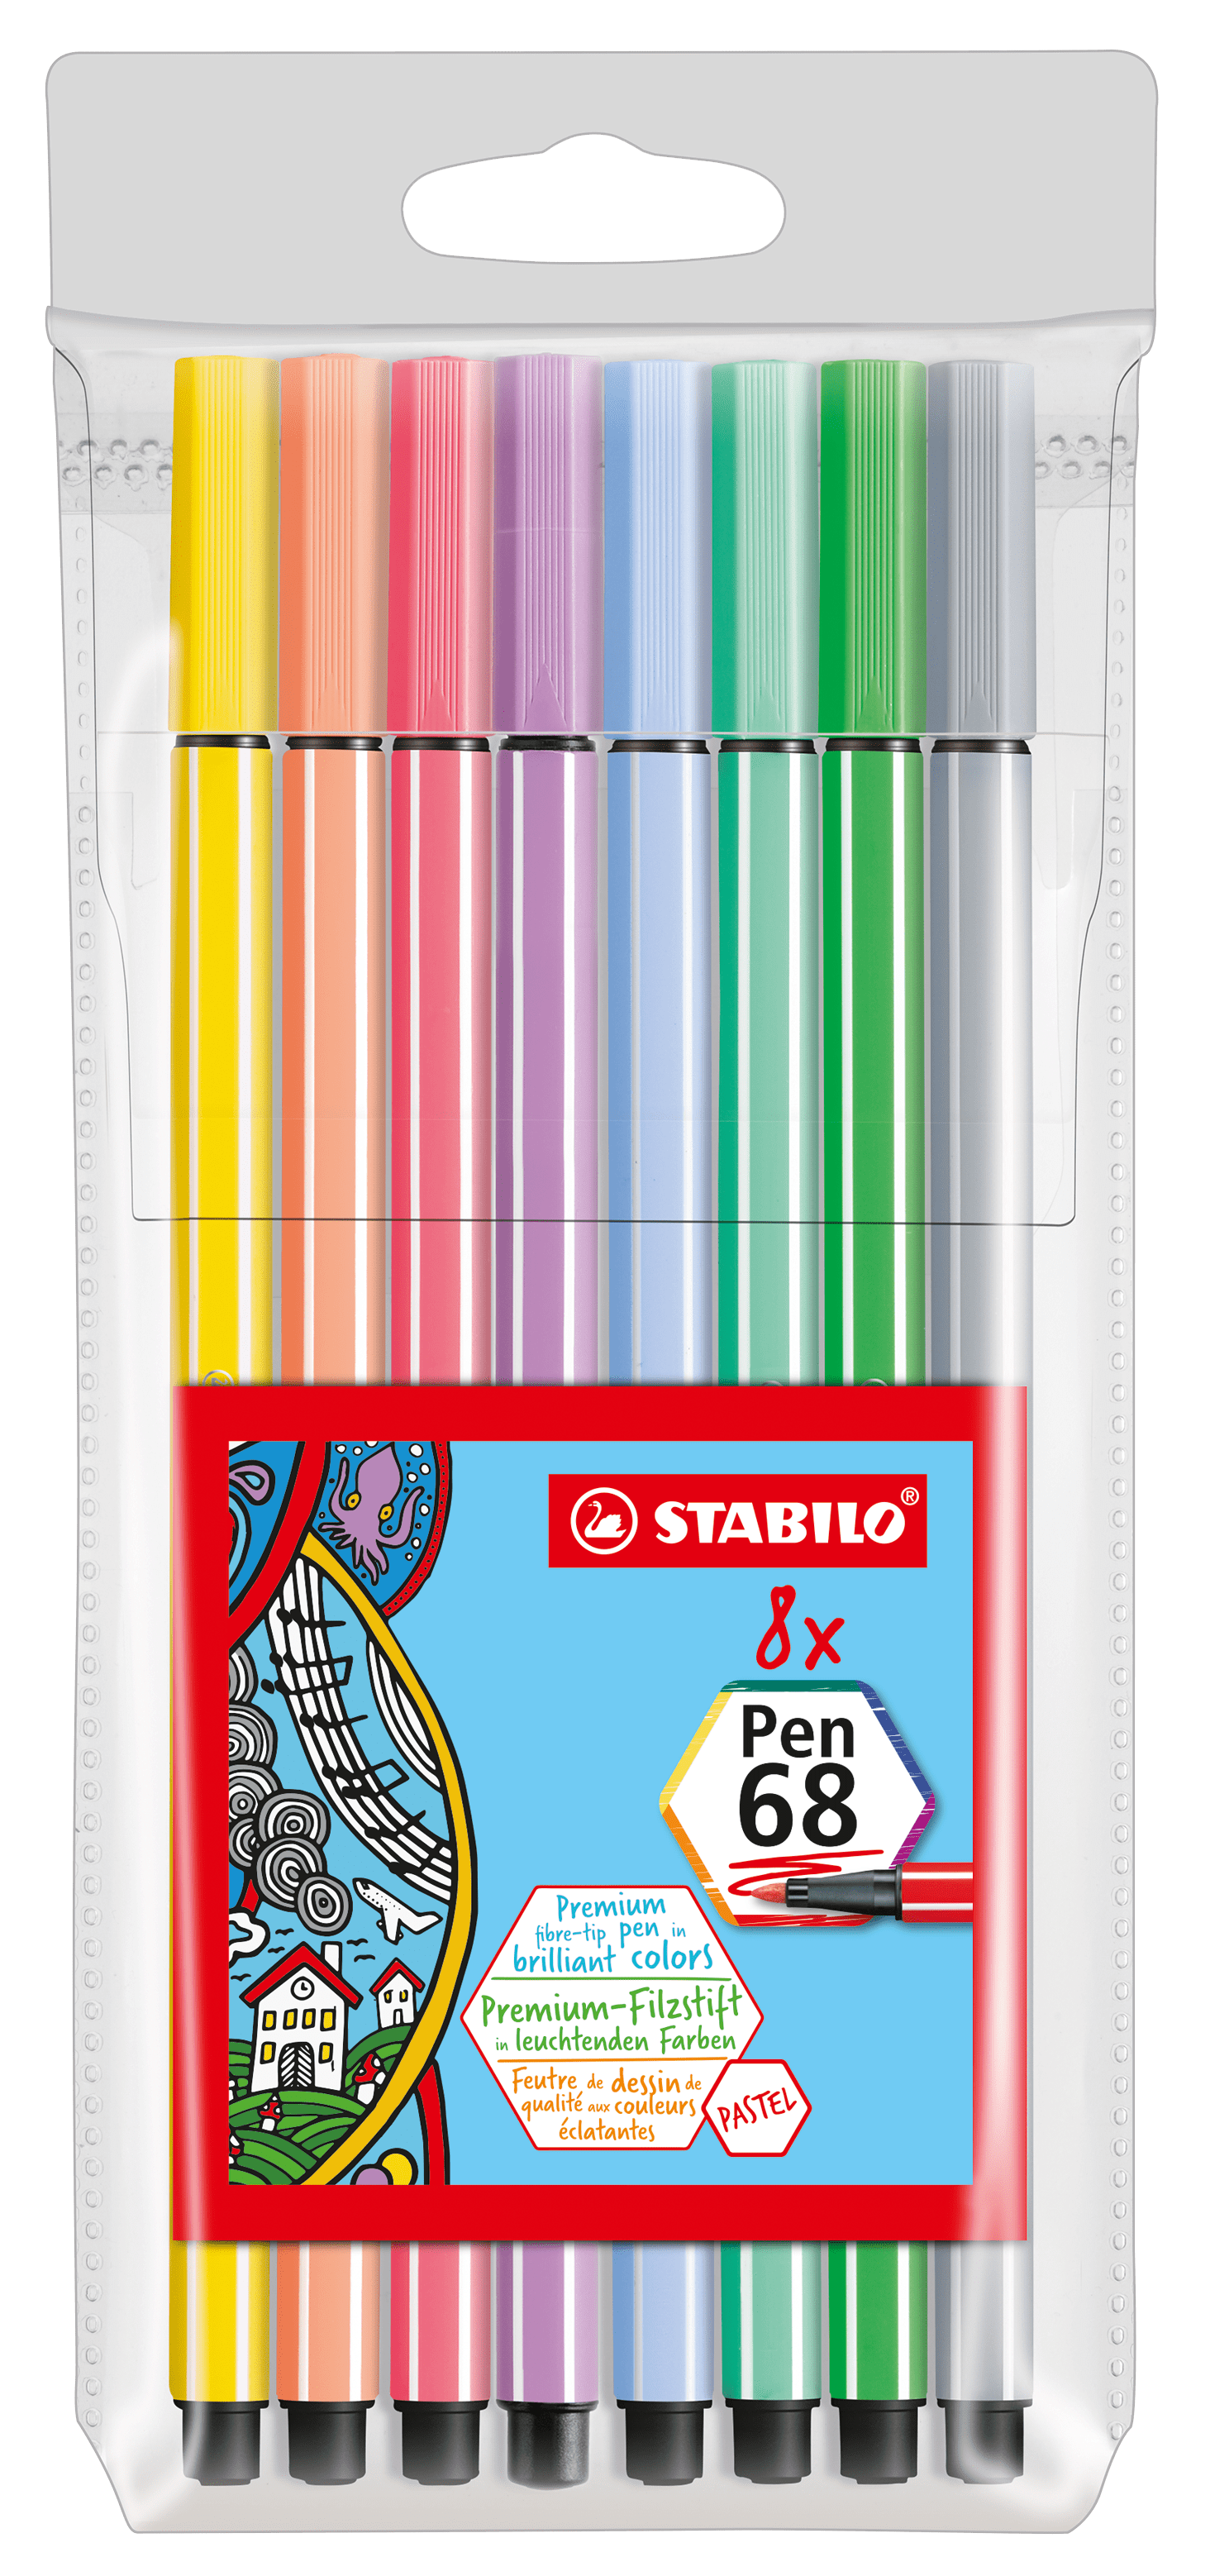 STABILO Pen 68 Pastel x8